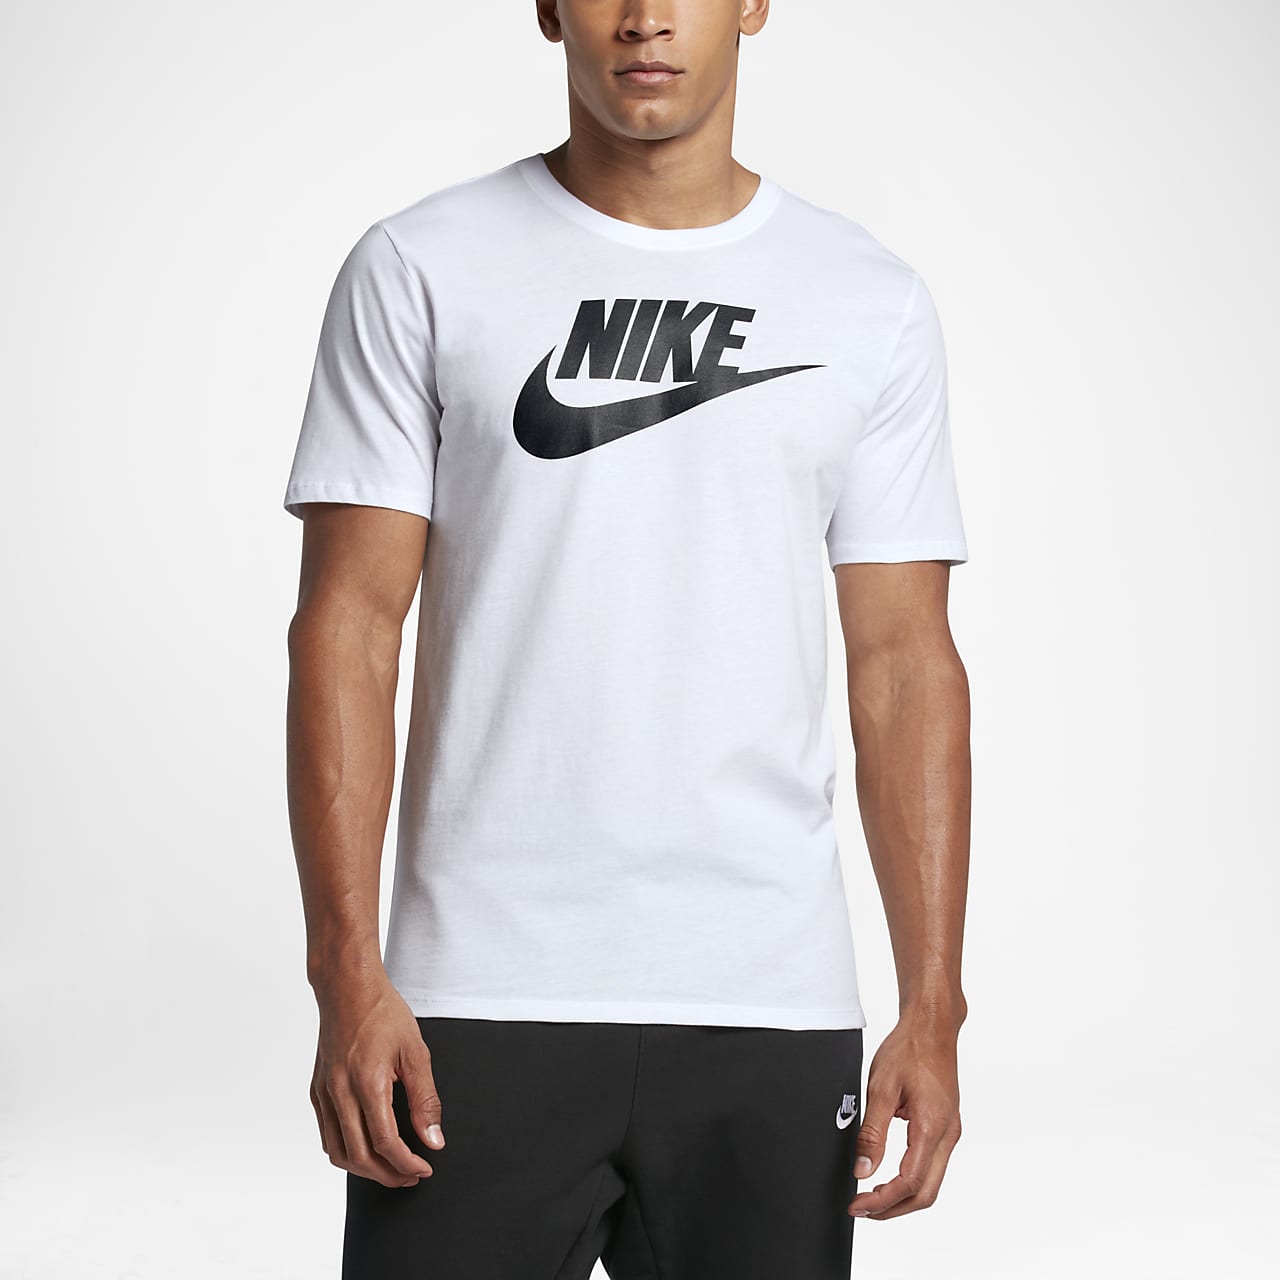 Nike Futura Icon 男款T 恤。Nike TW